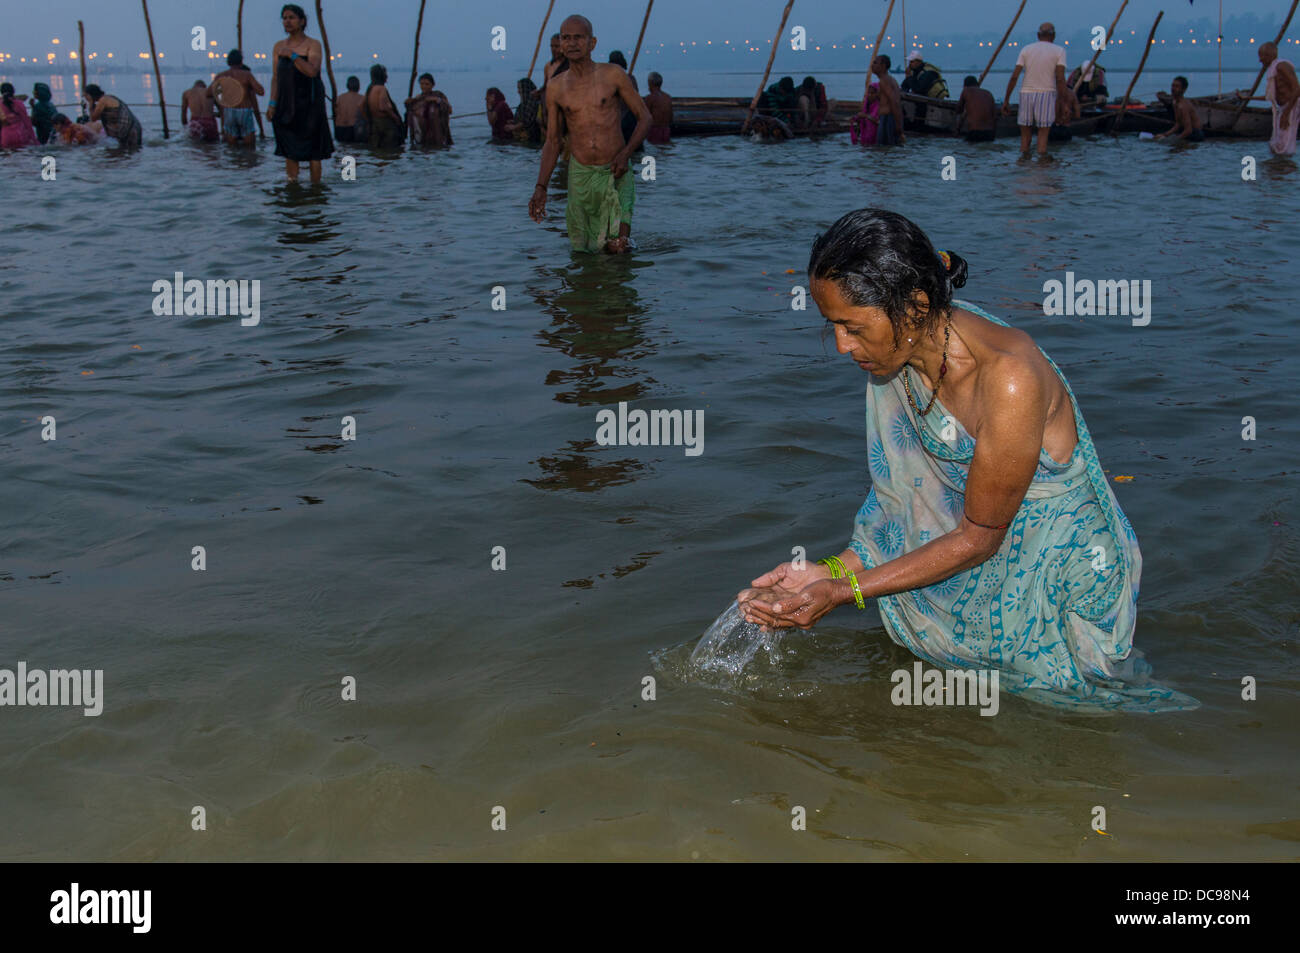 Frau Baden in der Sangam, dem Zusammenfluss der Flüsse Ganges und Yamuna Saraswati, in den frühen Morgenstunden Kumbha Mela Stockfoto